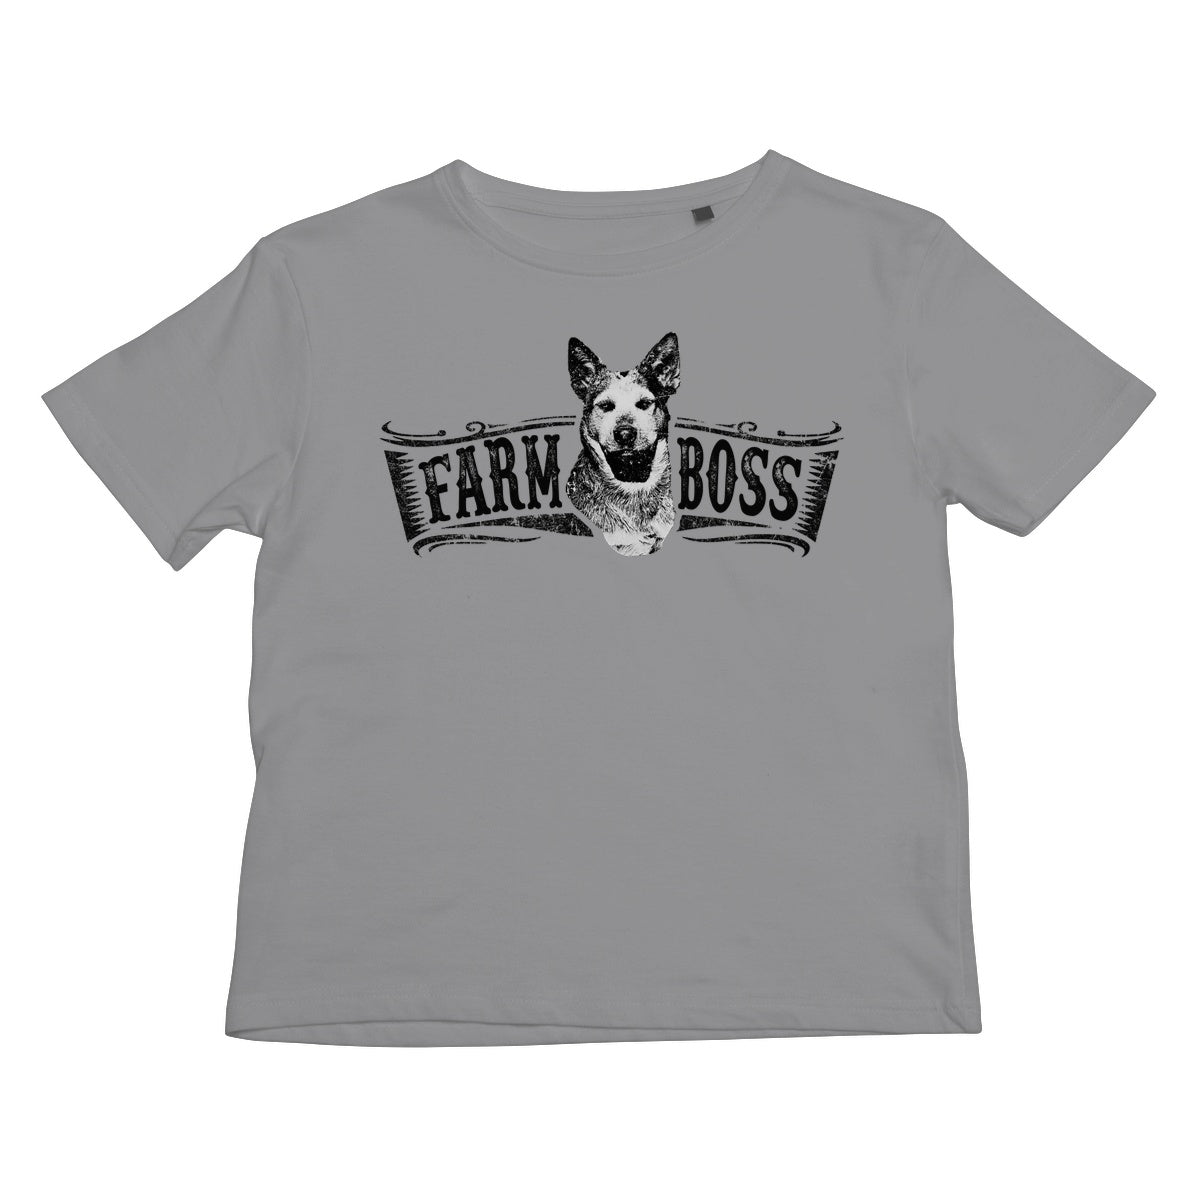 Farm Boss Kids T-Shirt